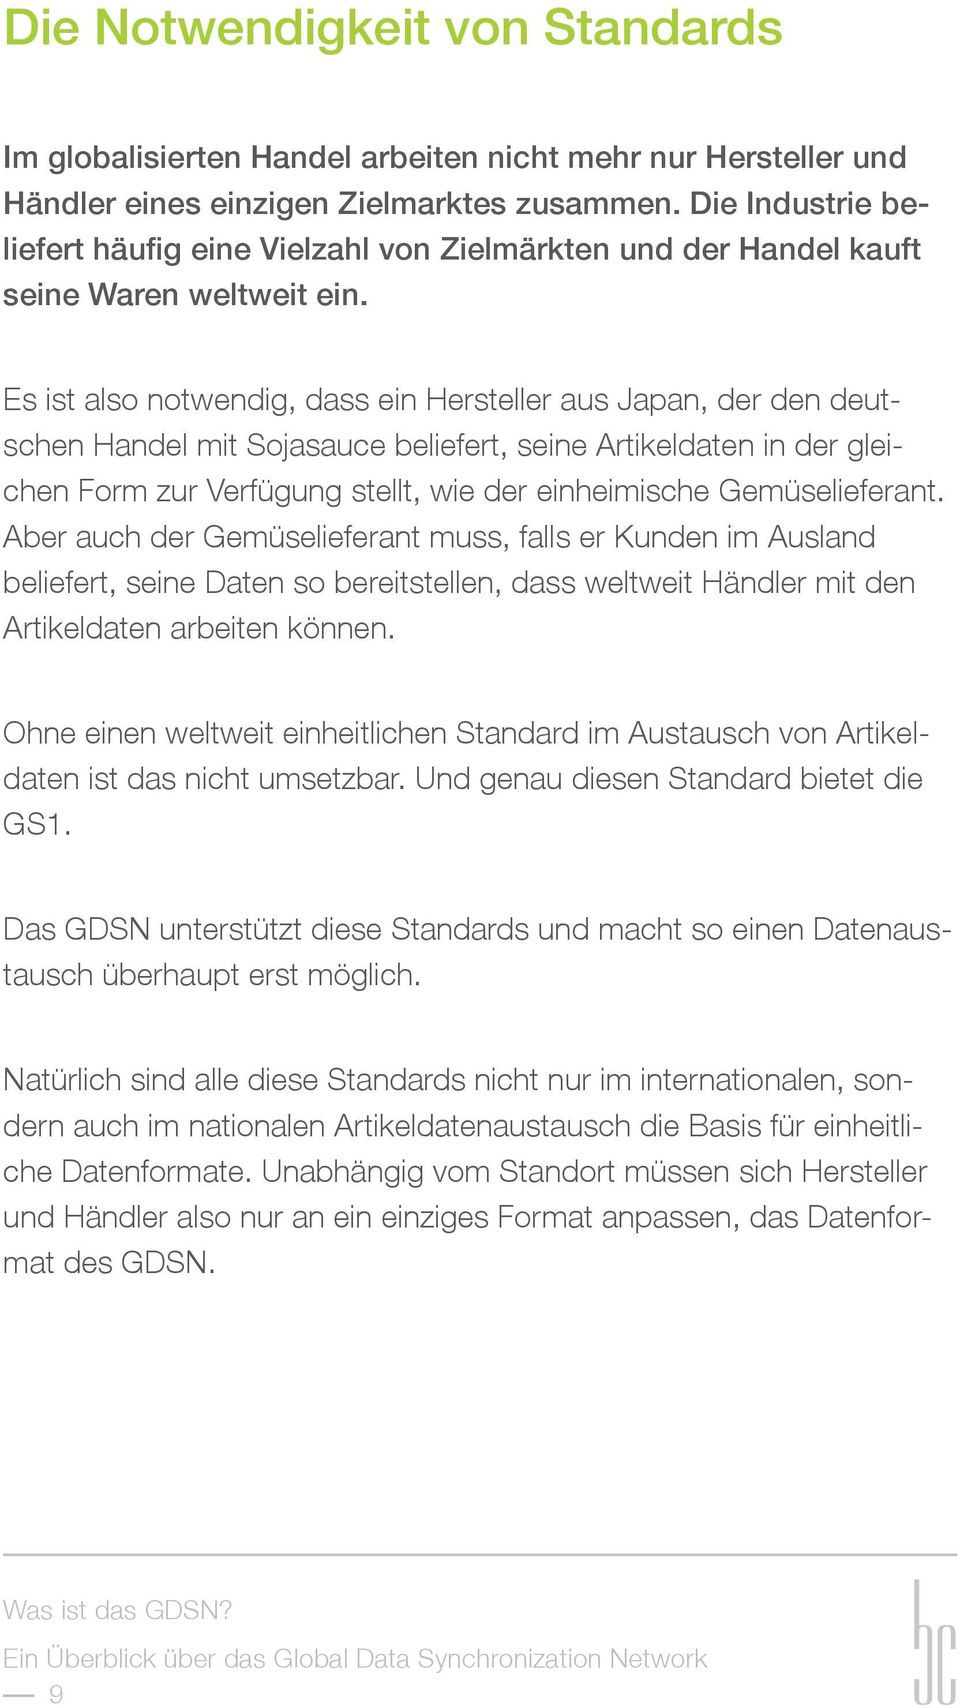 Es ist also notwendig, dass ein Hersteller aus Japan, der den deutschen Handel mit Sojasauce beliefert, seine Artikeldaten in der gleichen Form zur Verfügung stellt, wie der einheimische